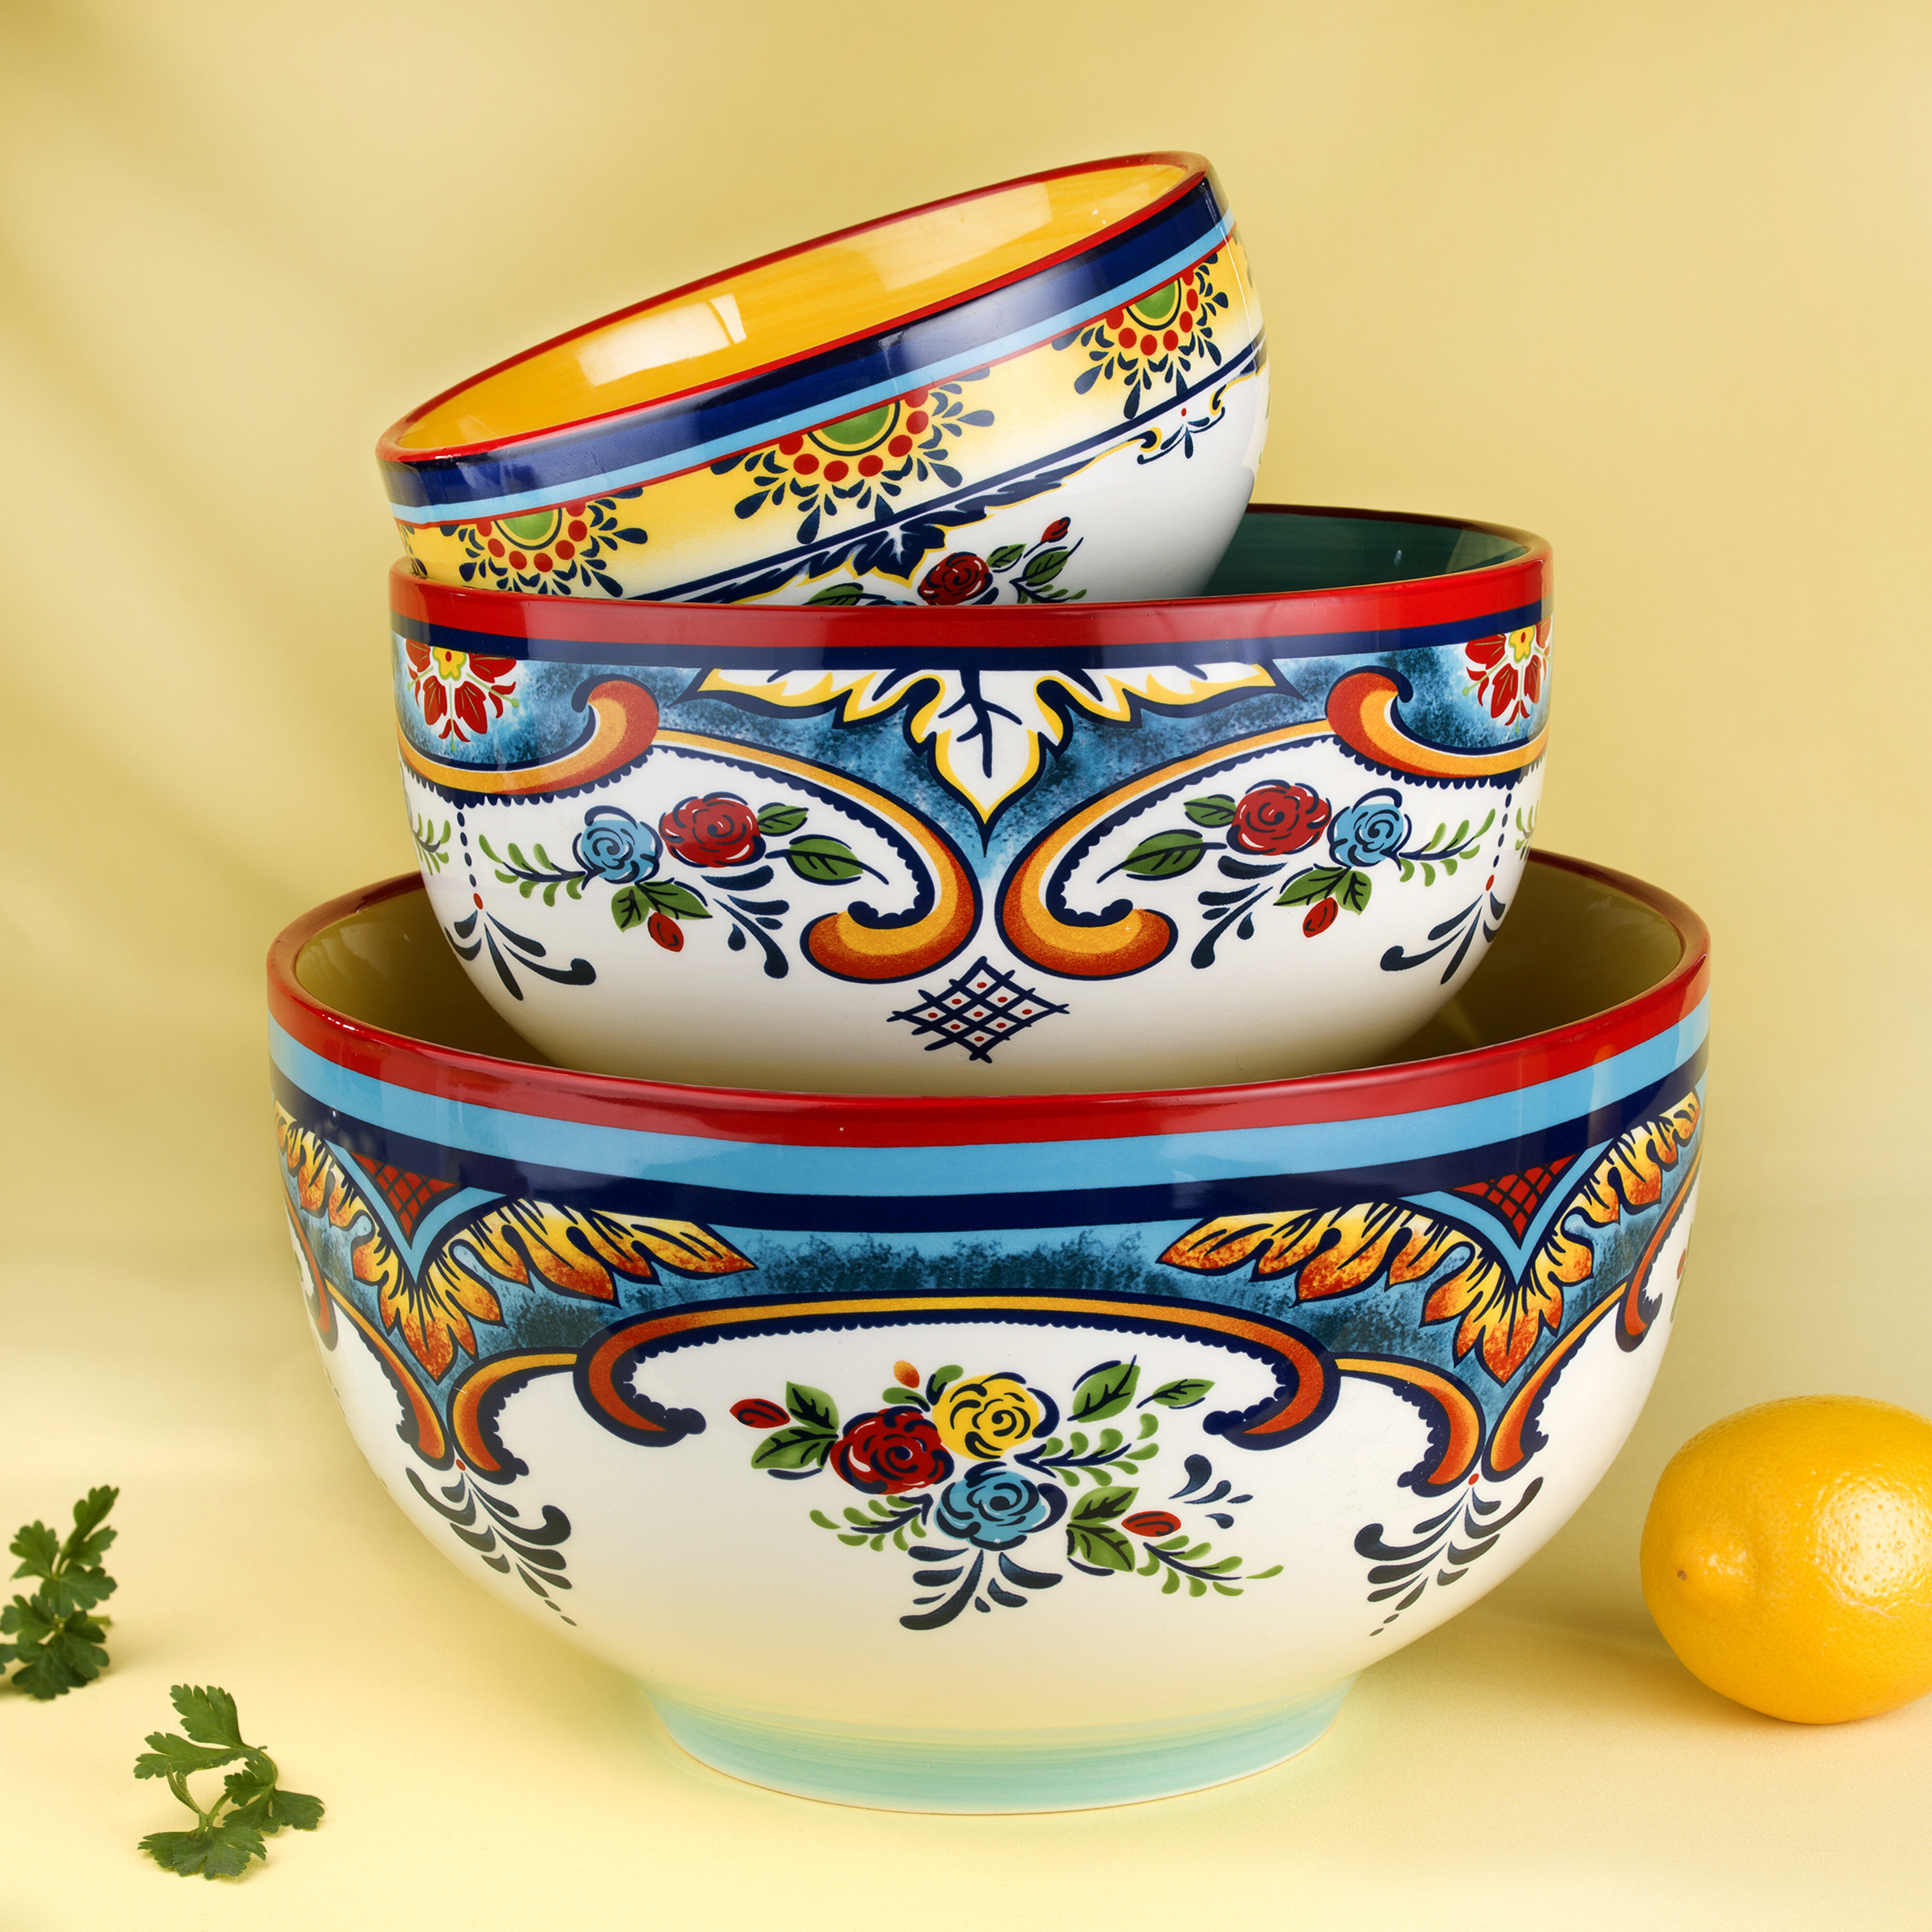 https://assets.wfcdn.com/im/83321708/compr-r85/1917/191722439/zanzibar-3-piece-ceramic-mixing-bowl-set.jpg